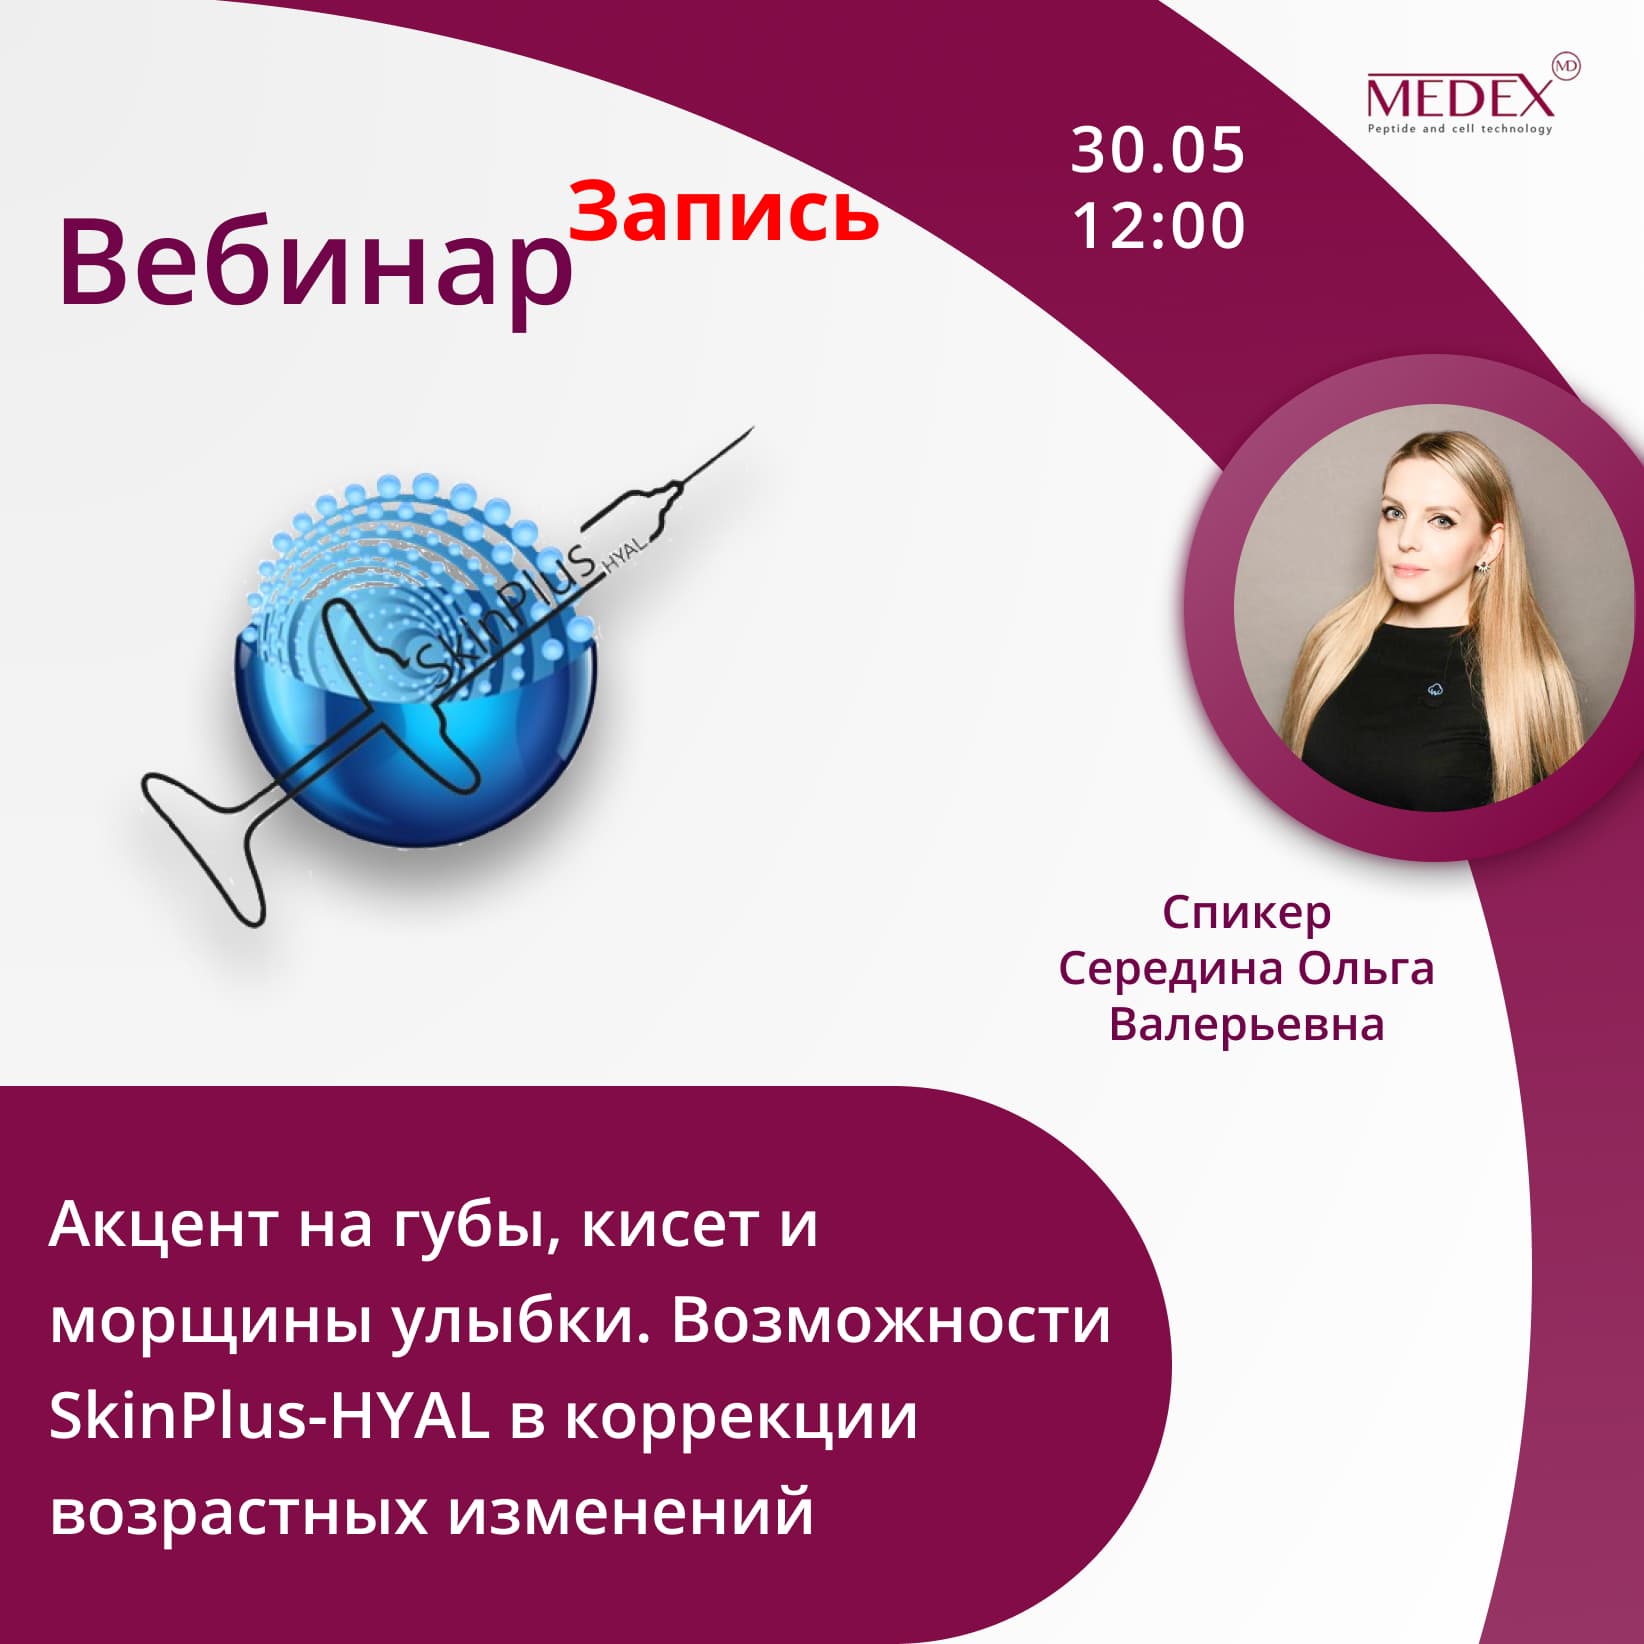 Баннер мероприятия — Вебинар от компании Медекс 30.05 в 12:00 часов по Москве со спикером Шаманина Елена Юрьевна